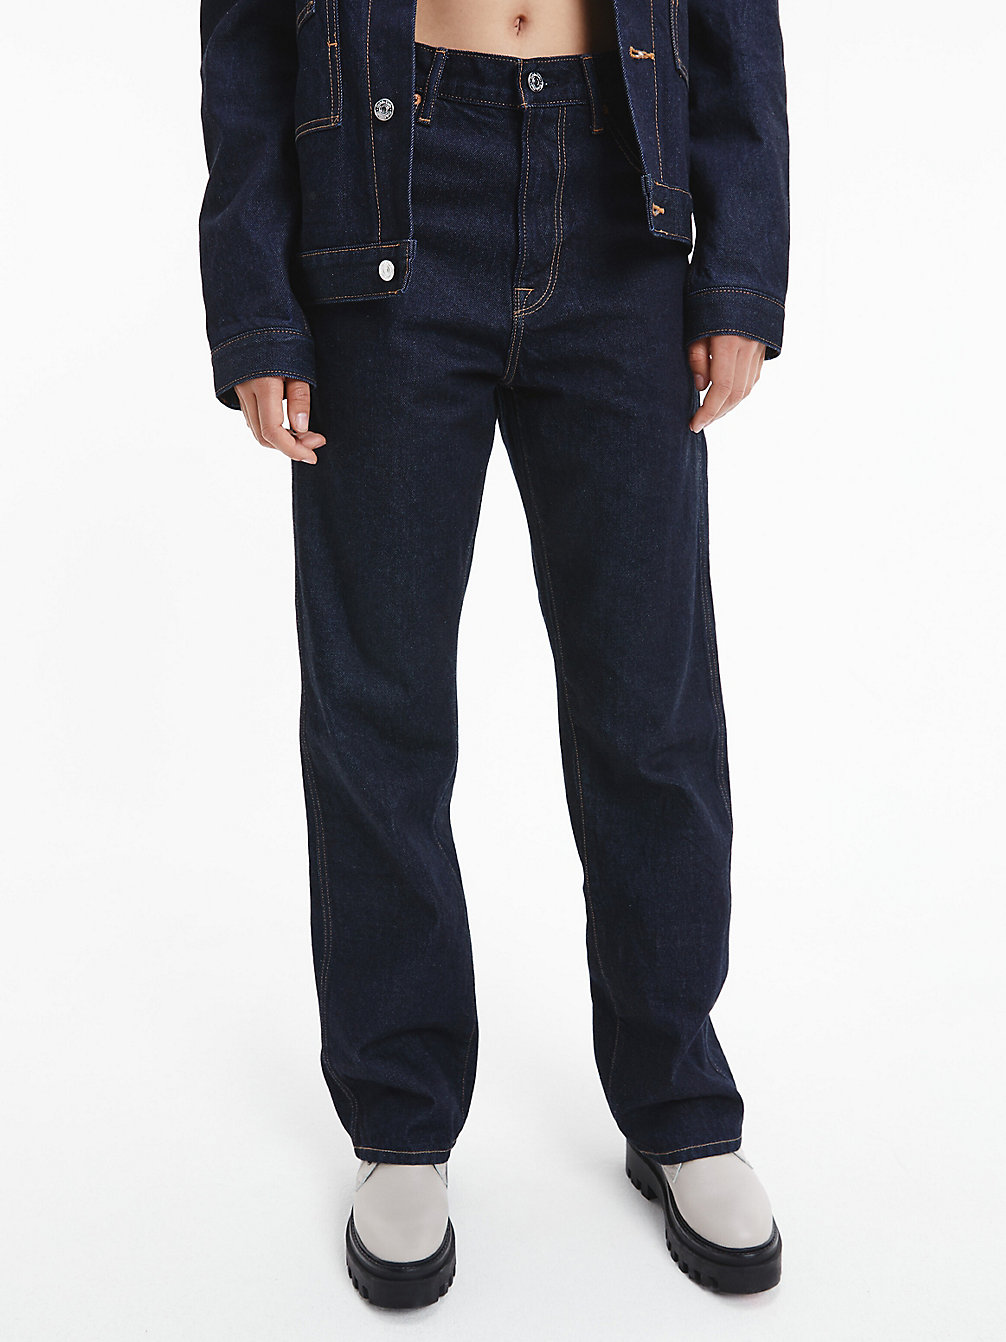 DENIM DARK Unisex Straight Jeans – CK Standards undefined unisex Calvin Klein